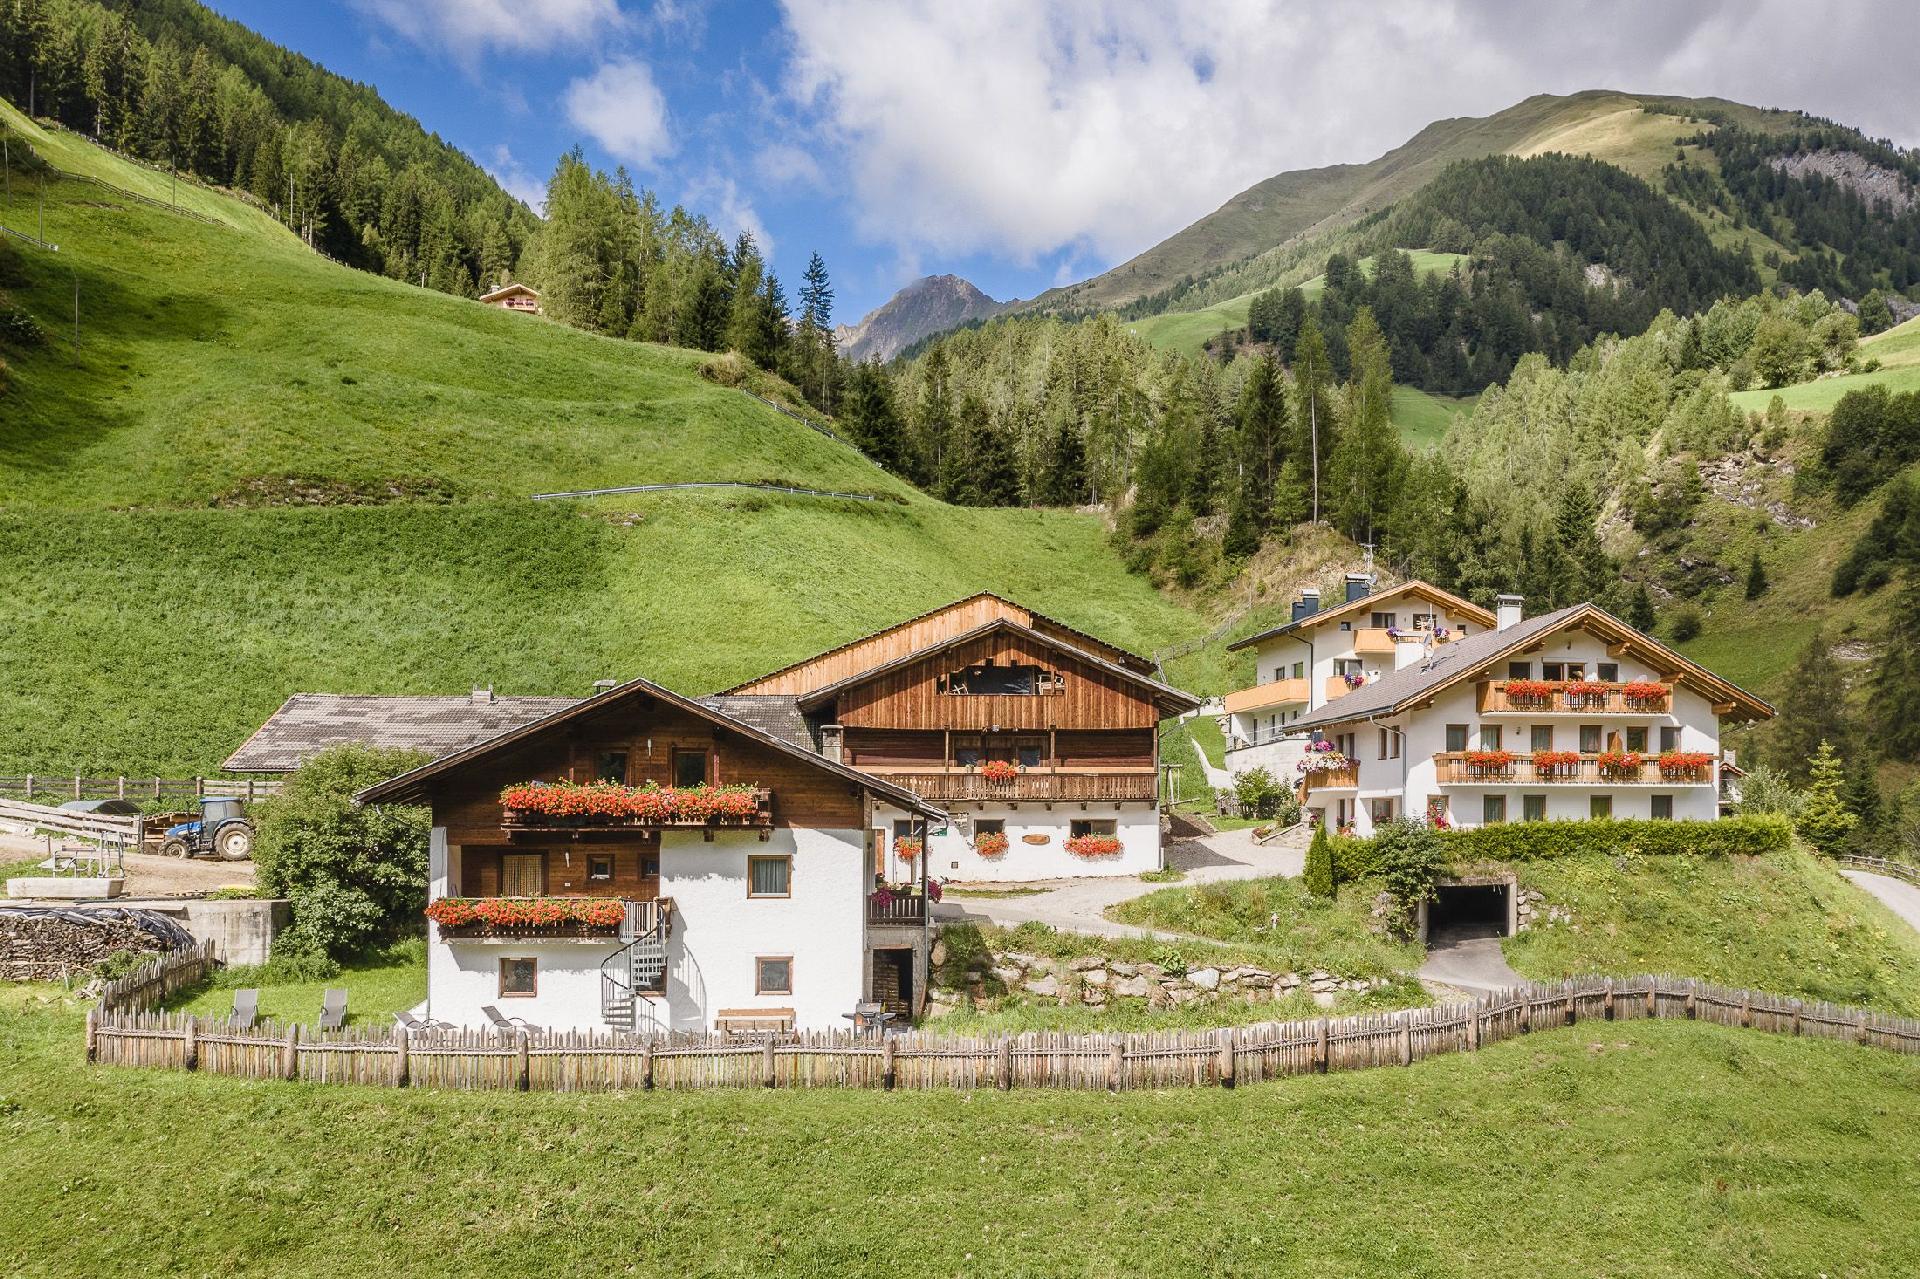 Ferienwohnung in schöner Bergkulisse mit zwei Bauernhof 